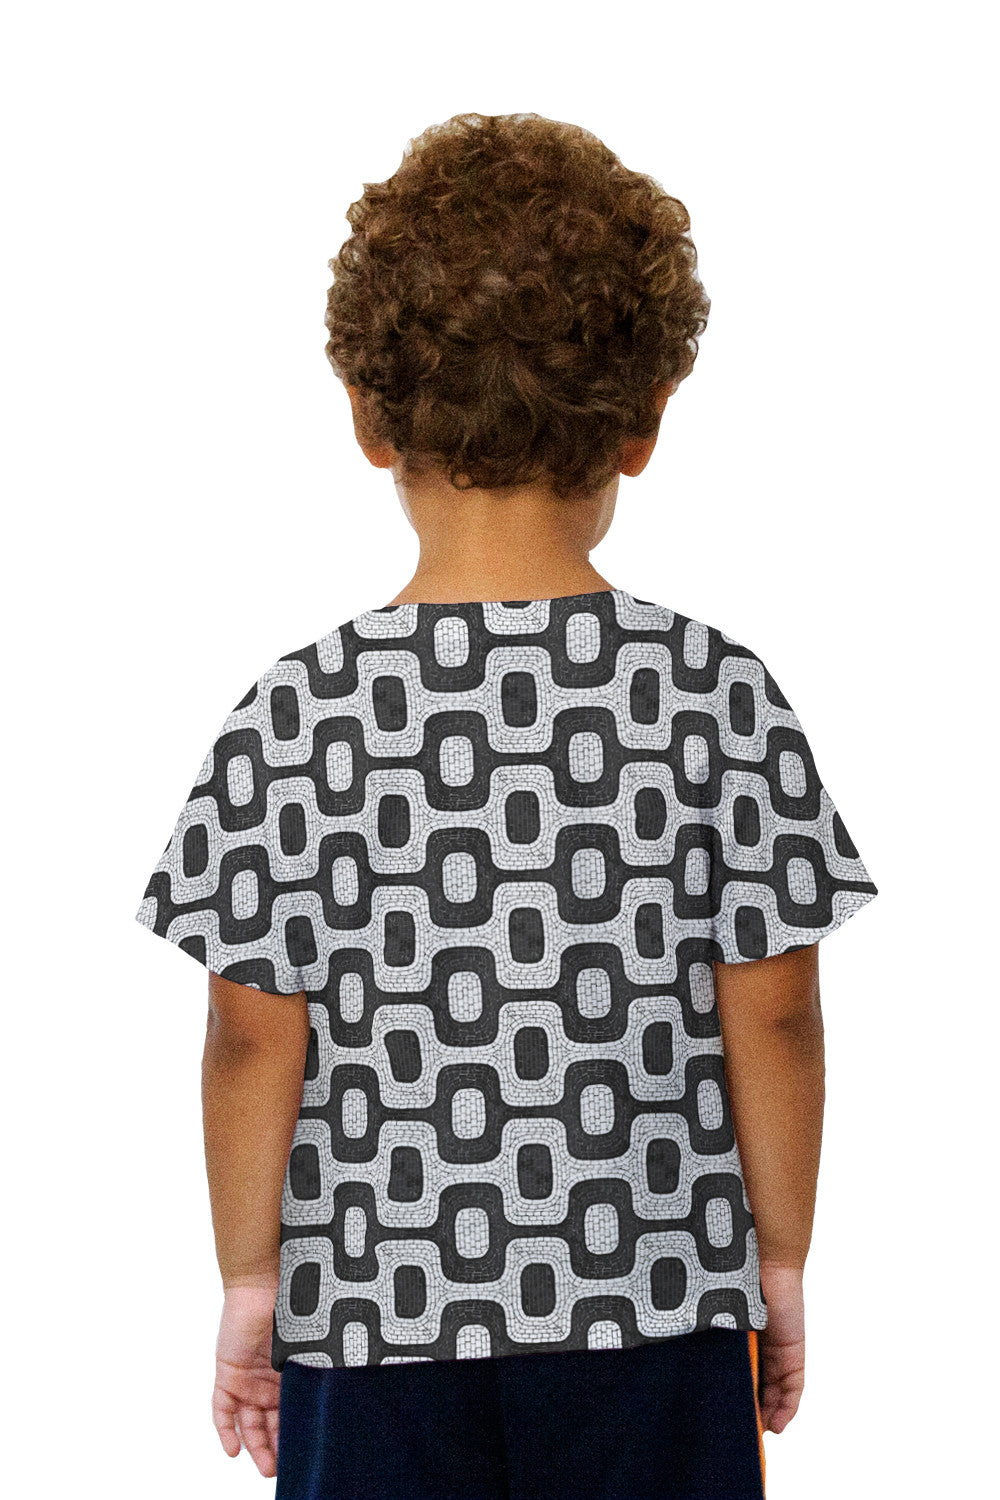 dubbellaag Intens Voorstel Kids Brazil Tiles Ipanema Beach Kids T-Shirt | Yizzam